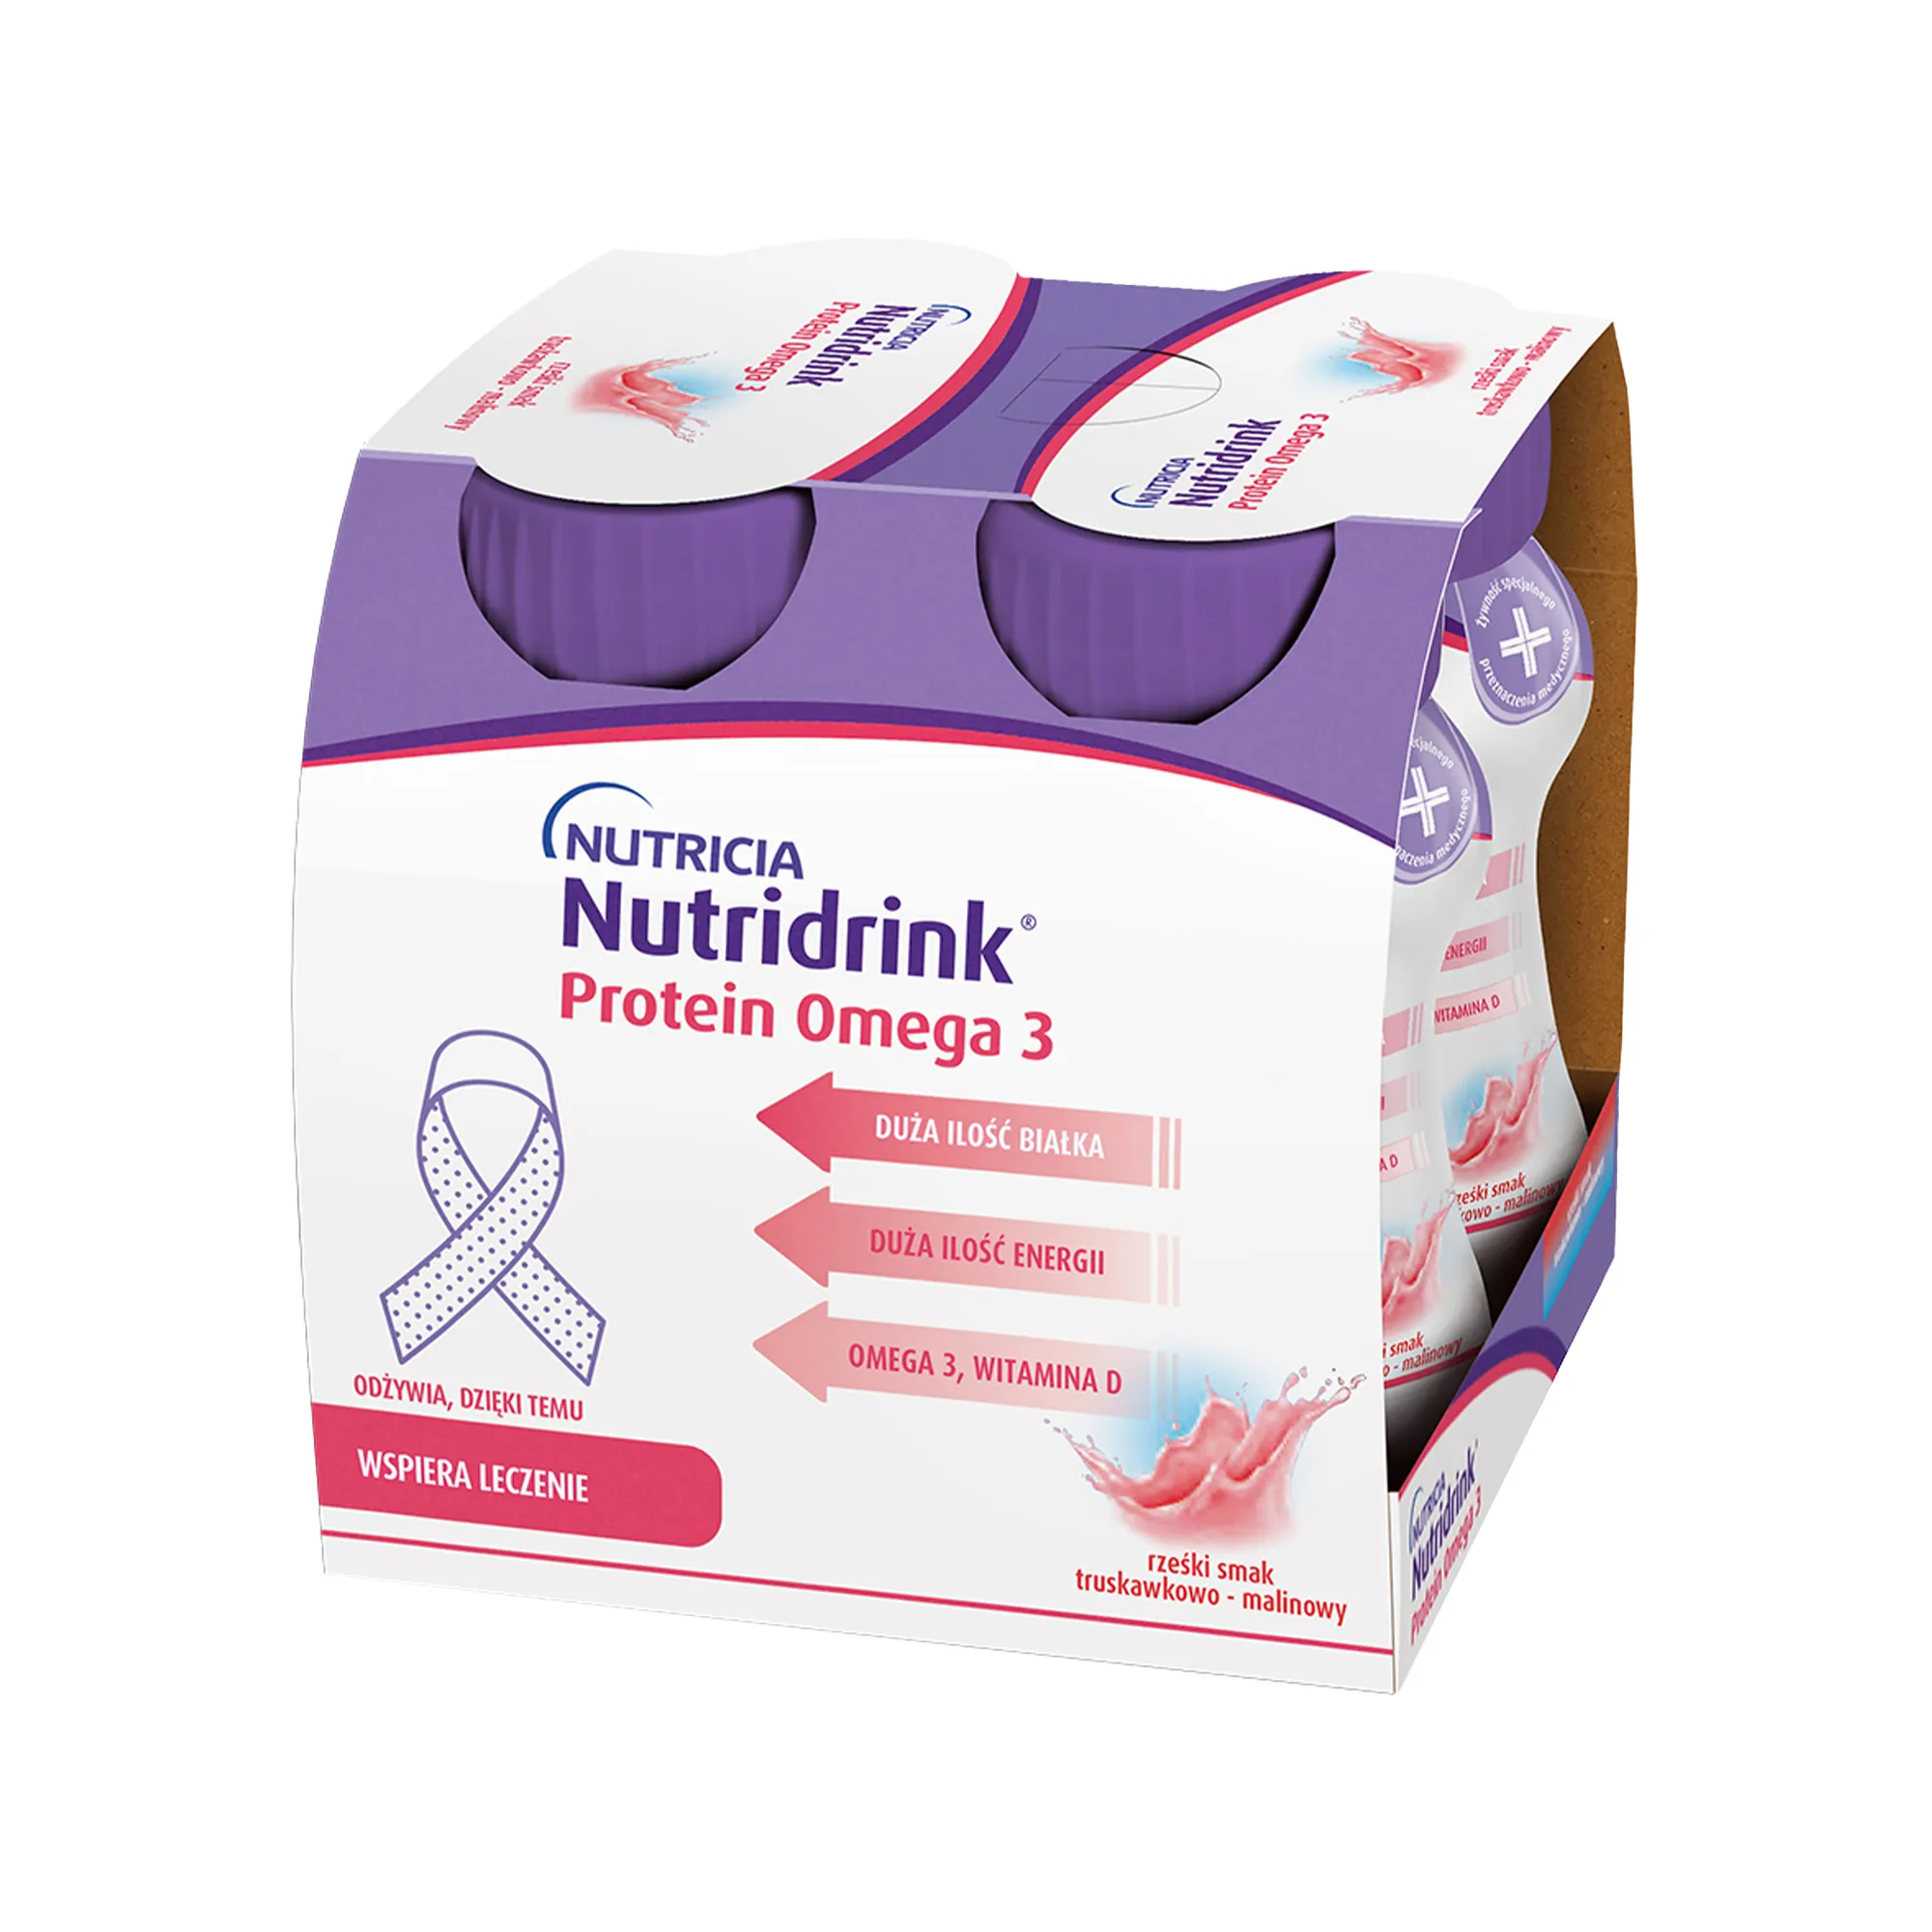 Nutridrink Protein Omega 3 o smaku truskawkowo-malinowym, 4x125 ml